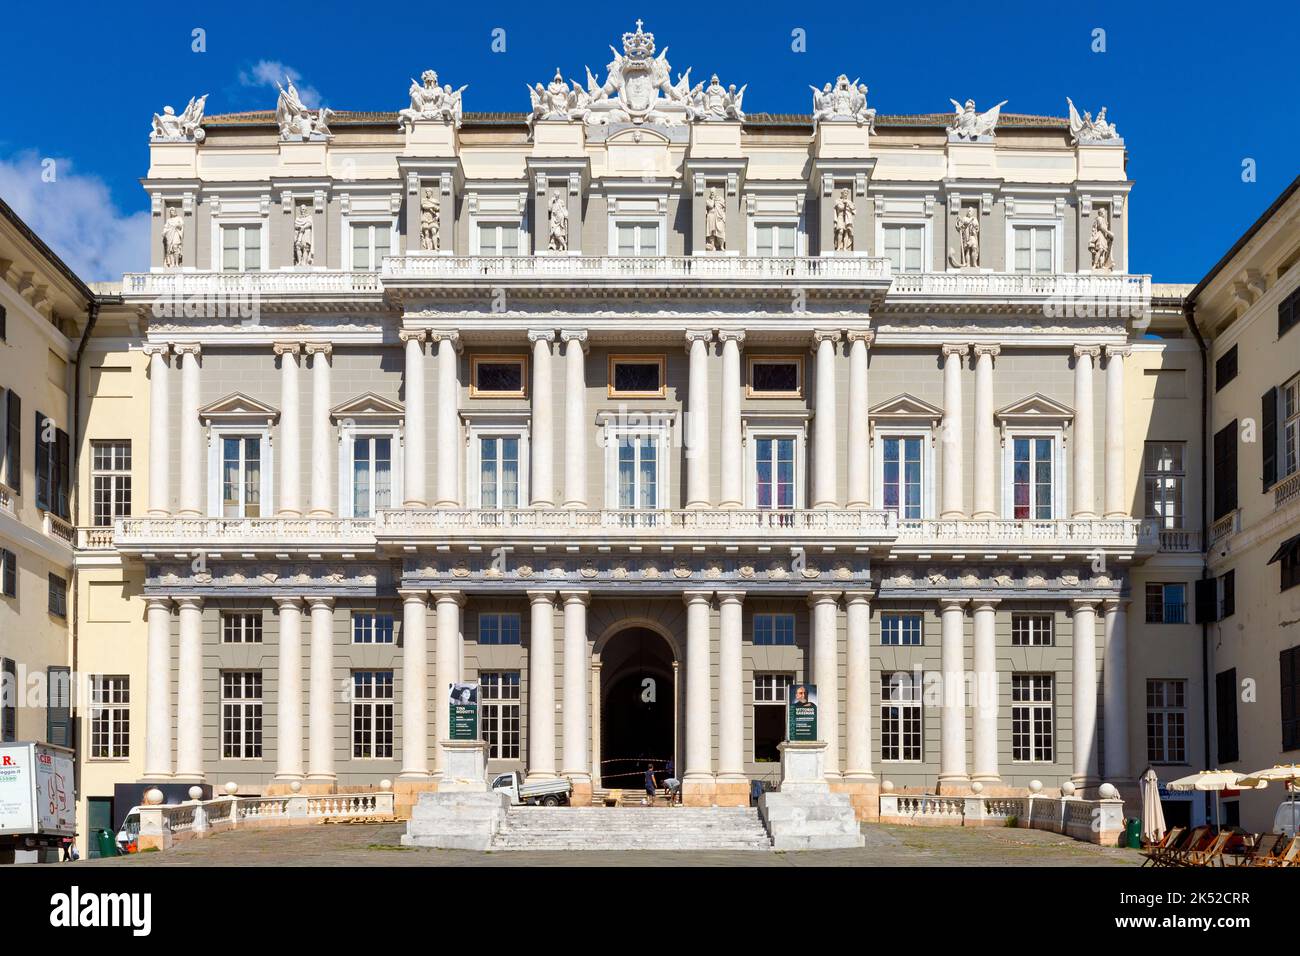 Le Palais de Gênes (Gênes) de Doge près de la Piazza Matteotti avec sa façade néoclassique. Capitale de la région de Ligurie, Italie. Piazza Matteotti avec sa néoclasse Banque D'Images